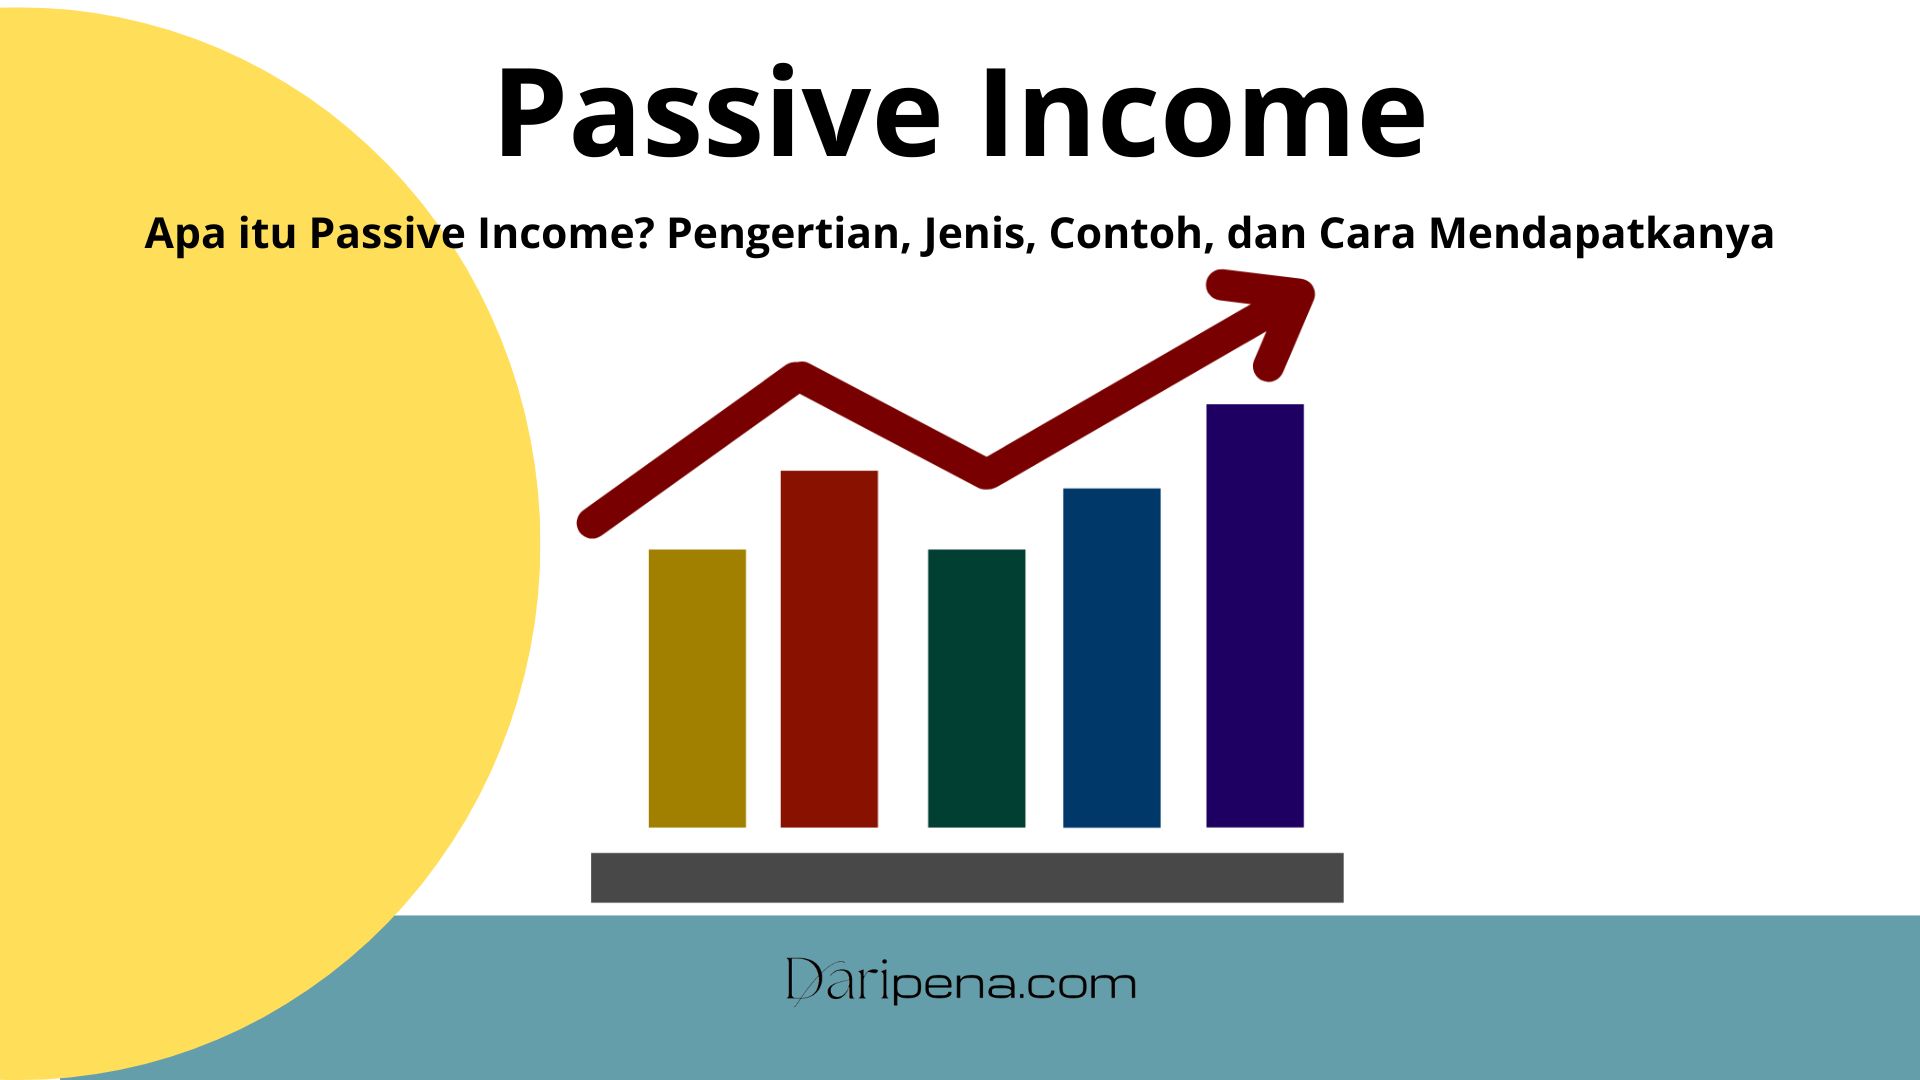 Show Passive Income  101 Passive Income Ideas Under $1000